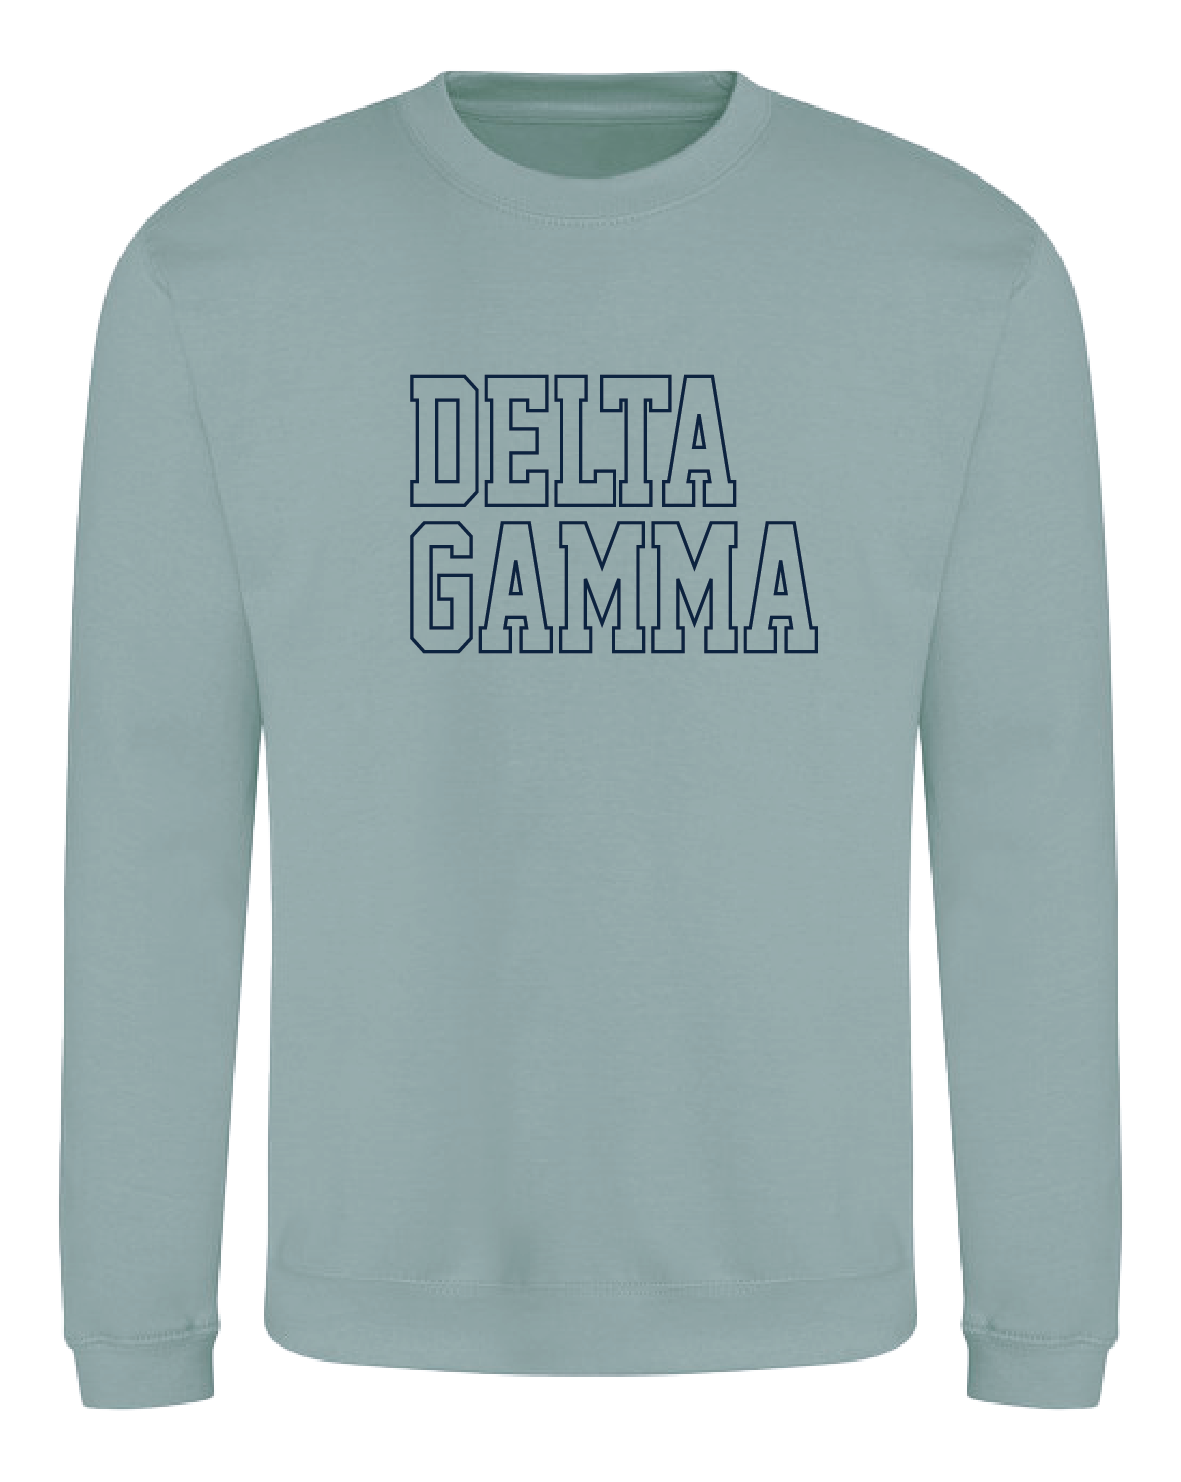 WS - Delta Gamma Block Crewneck (min qty 6) $32 / $70